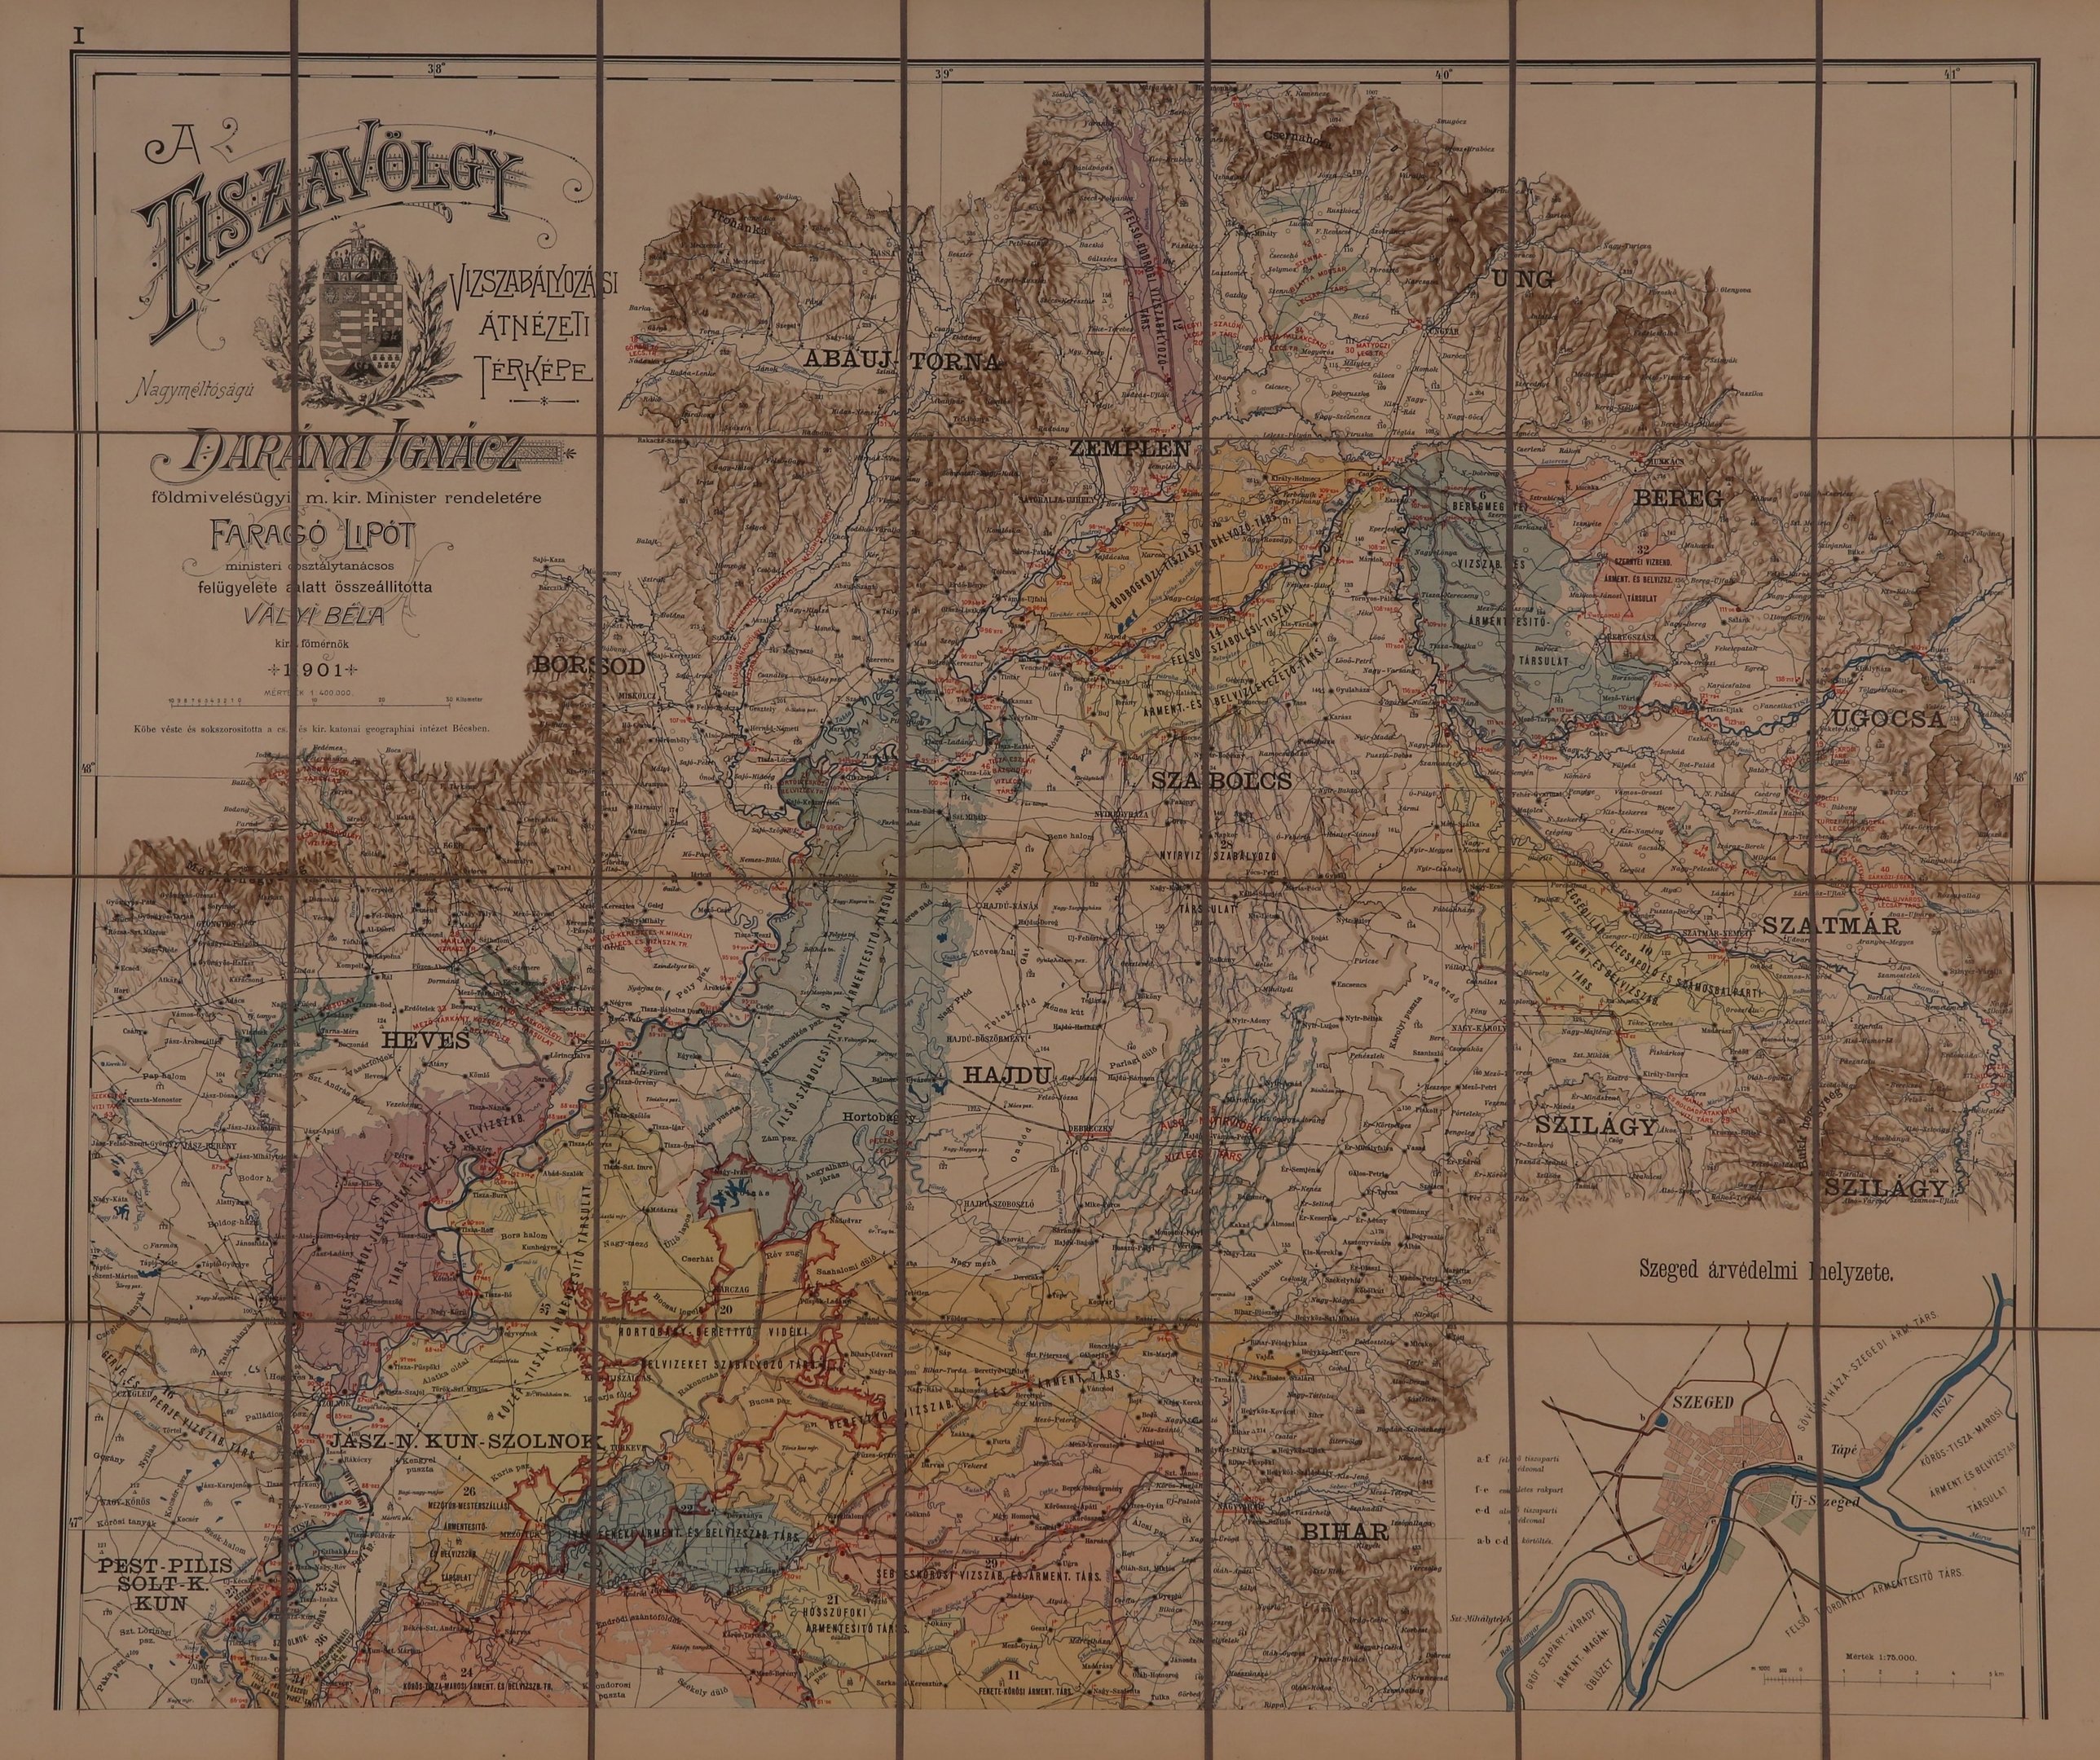 A Tiszavölgy vízszabályozási és átnézeti térképe (Magyar Környezetvédelmi és Vízügyi Múzeum - Duna Múzeum CC BY-NC-SA)